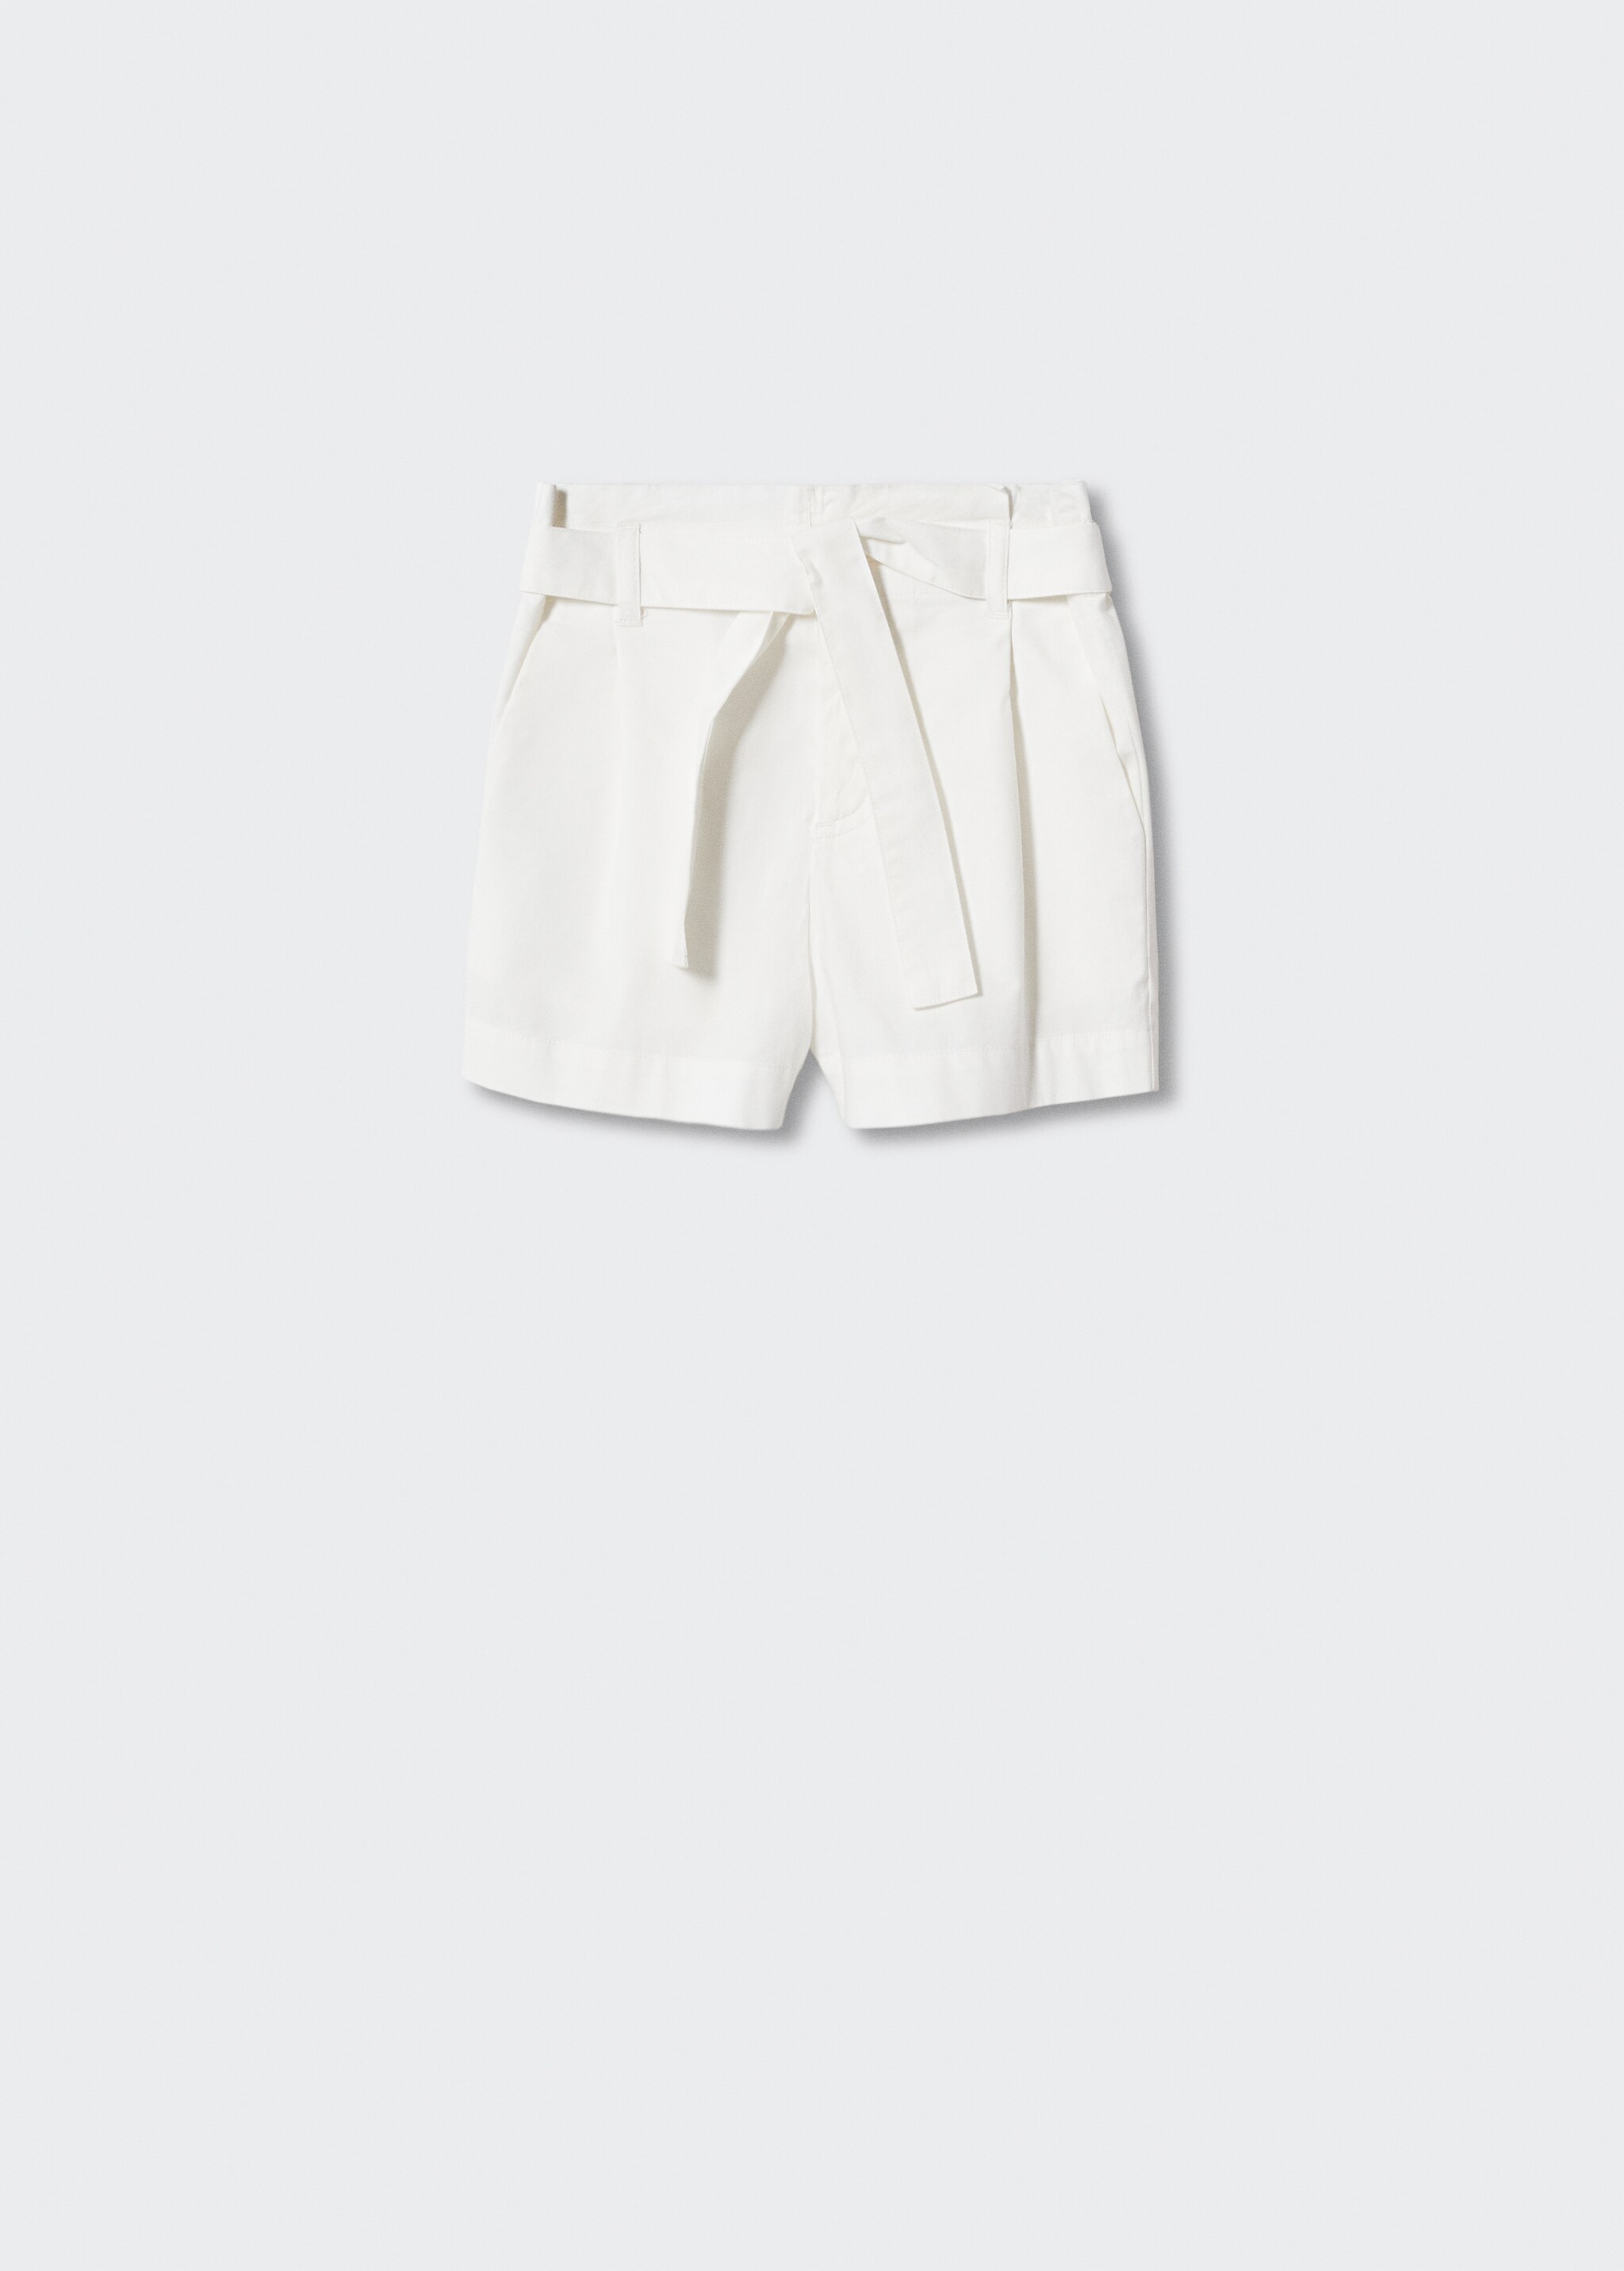 Paper-bag shorts - Artikkel uten modell